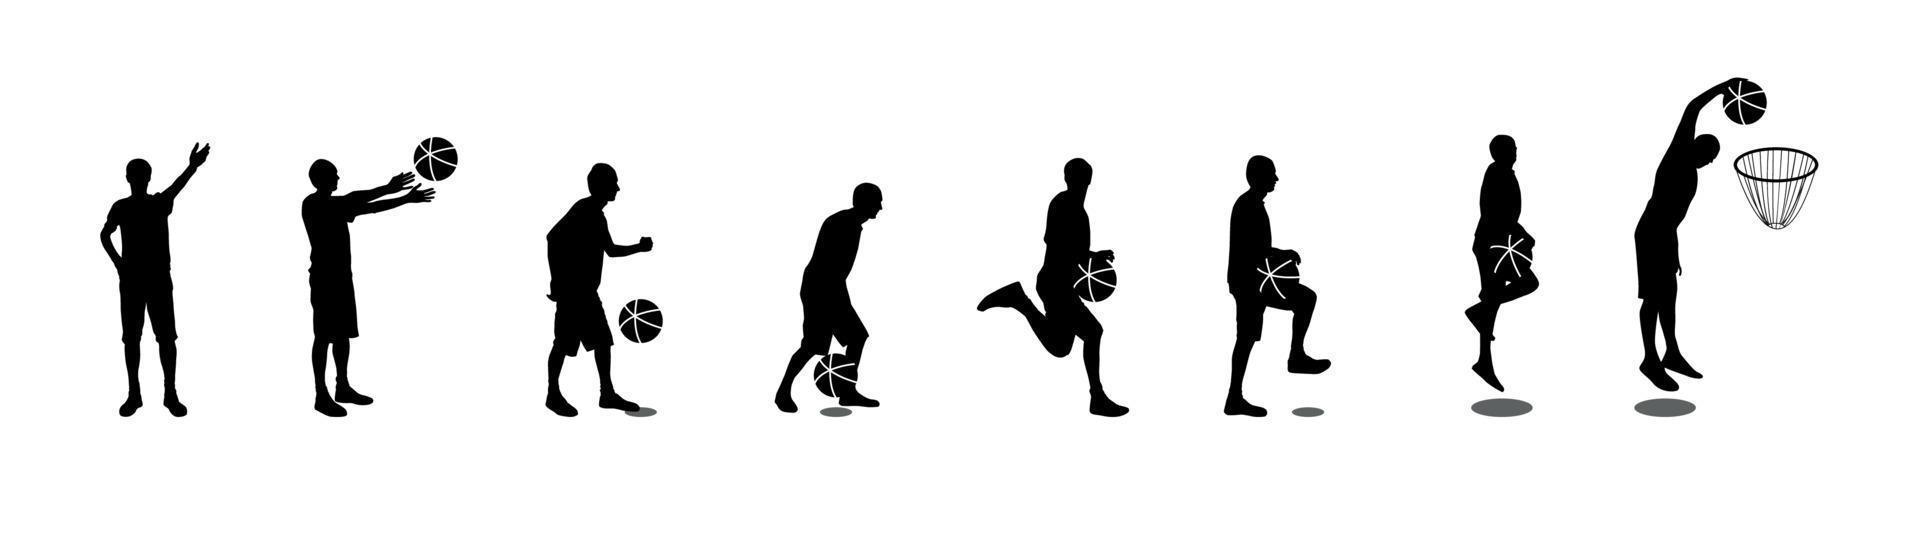 uppsättning basketspelare vektor illustration